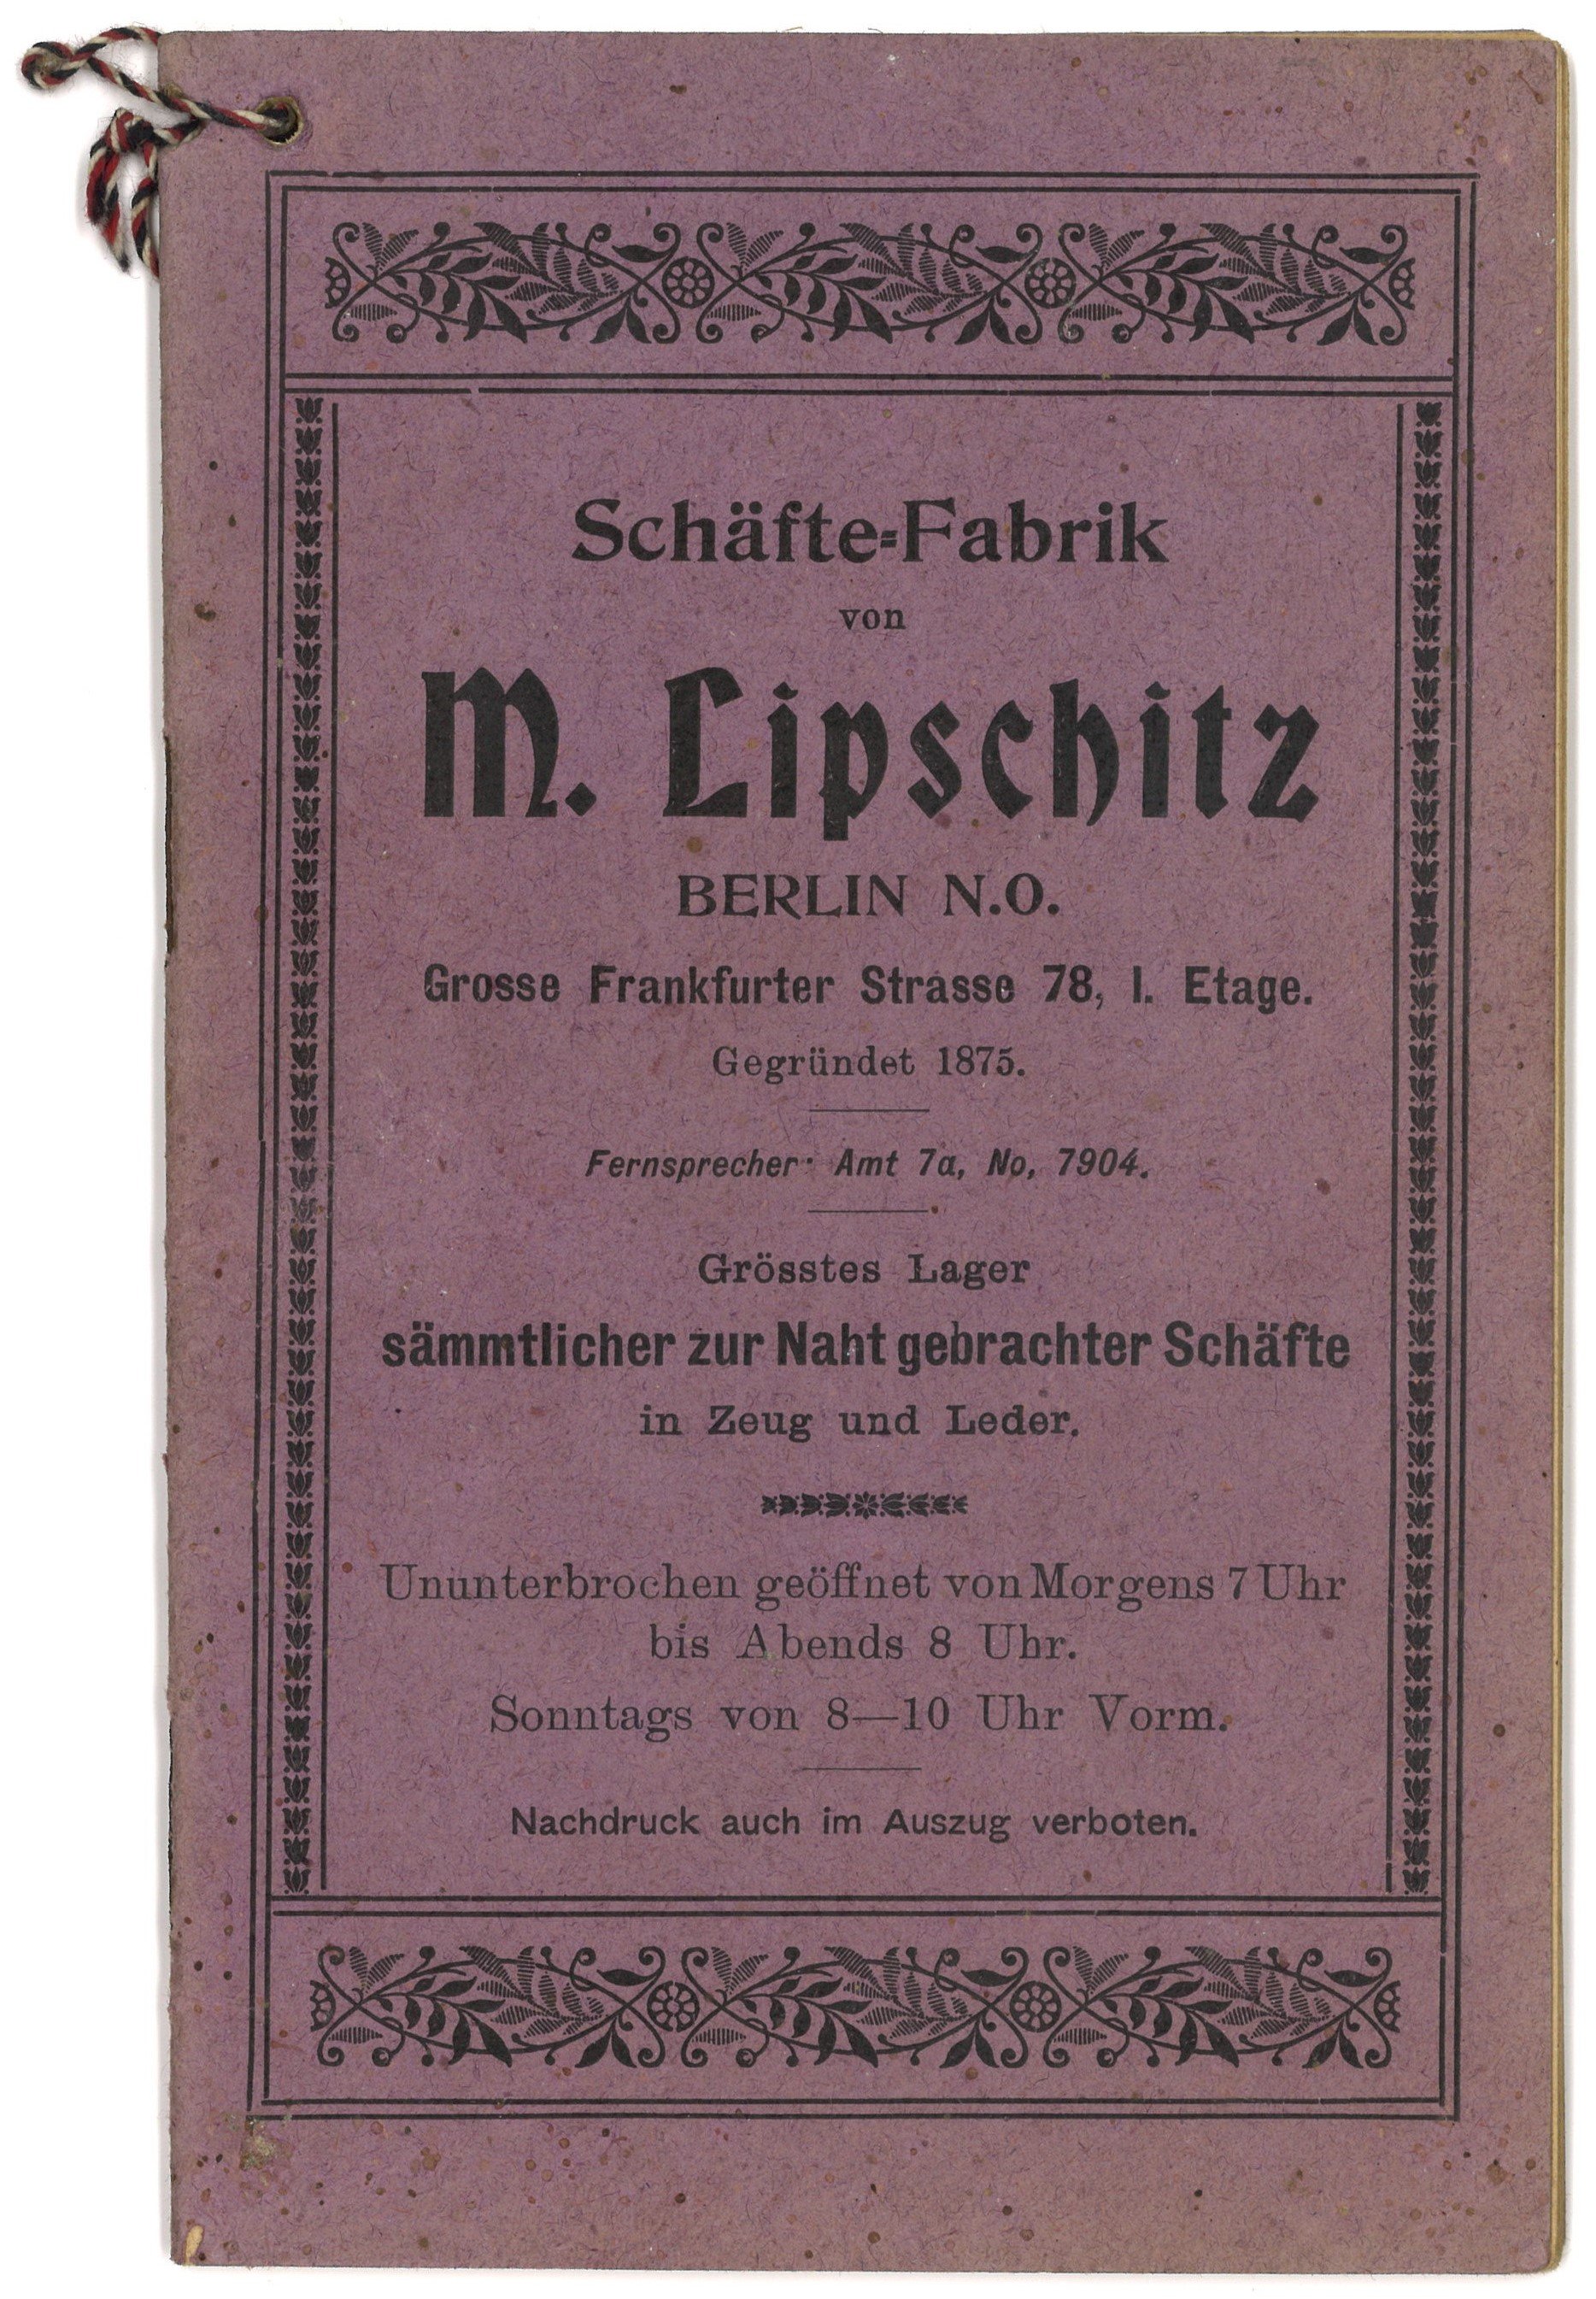 Schäfte-Fabrik M. Lipschitz, Berlin: Preisliste (Landesgeschichtliche Vereinigung für die Mark Brandenburg e.V., Archiv CC BY)